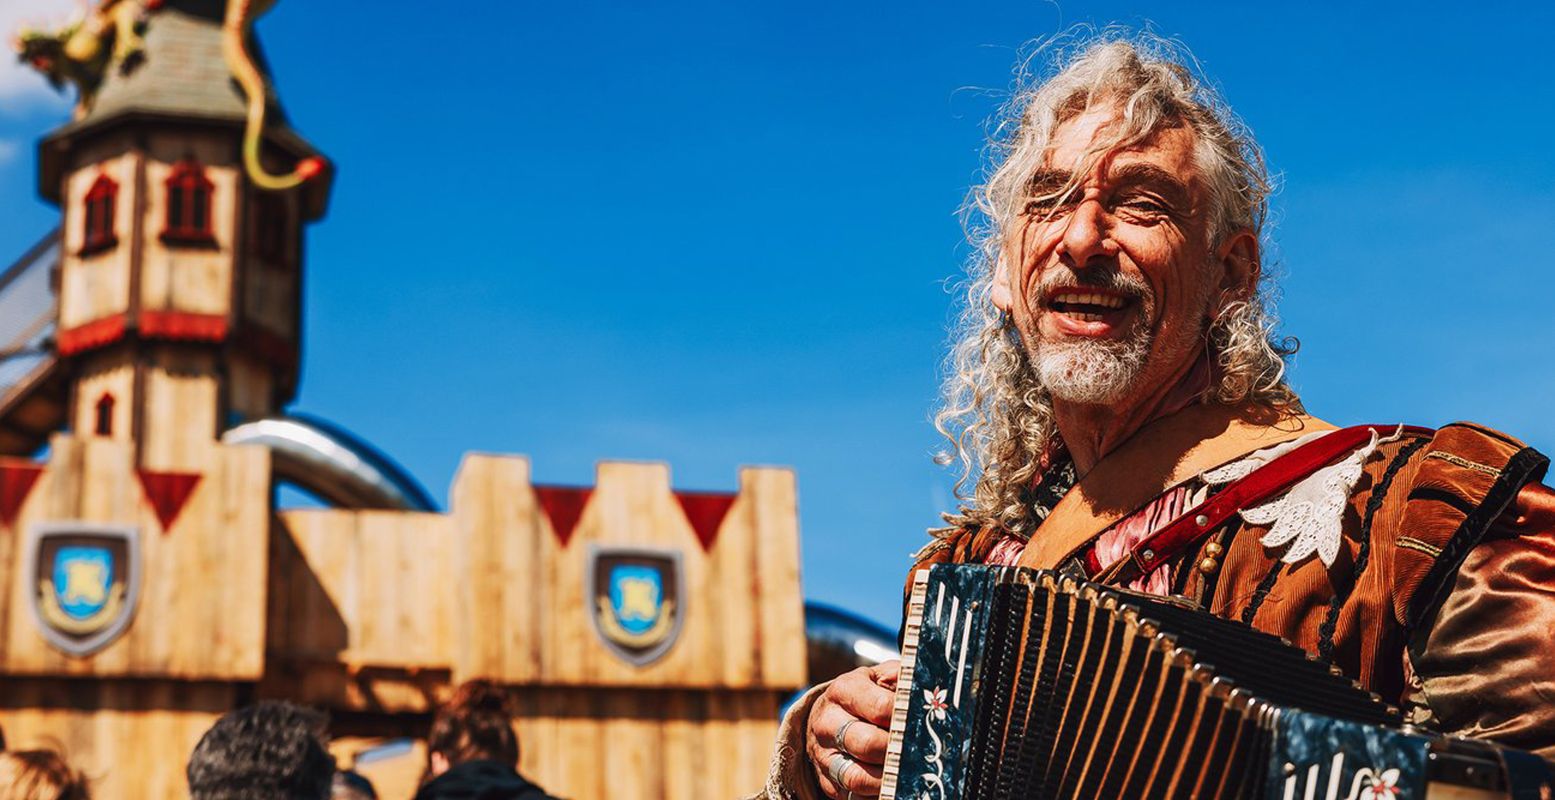 De troubadour speelt een middeleeuws muziekje tijdens Drakendag. Foto: BillyBird Park Drakenrijk